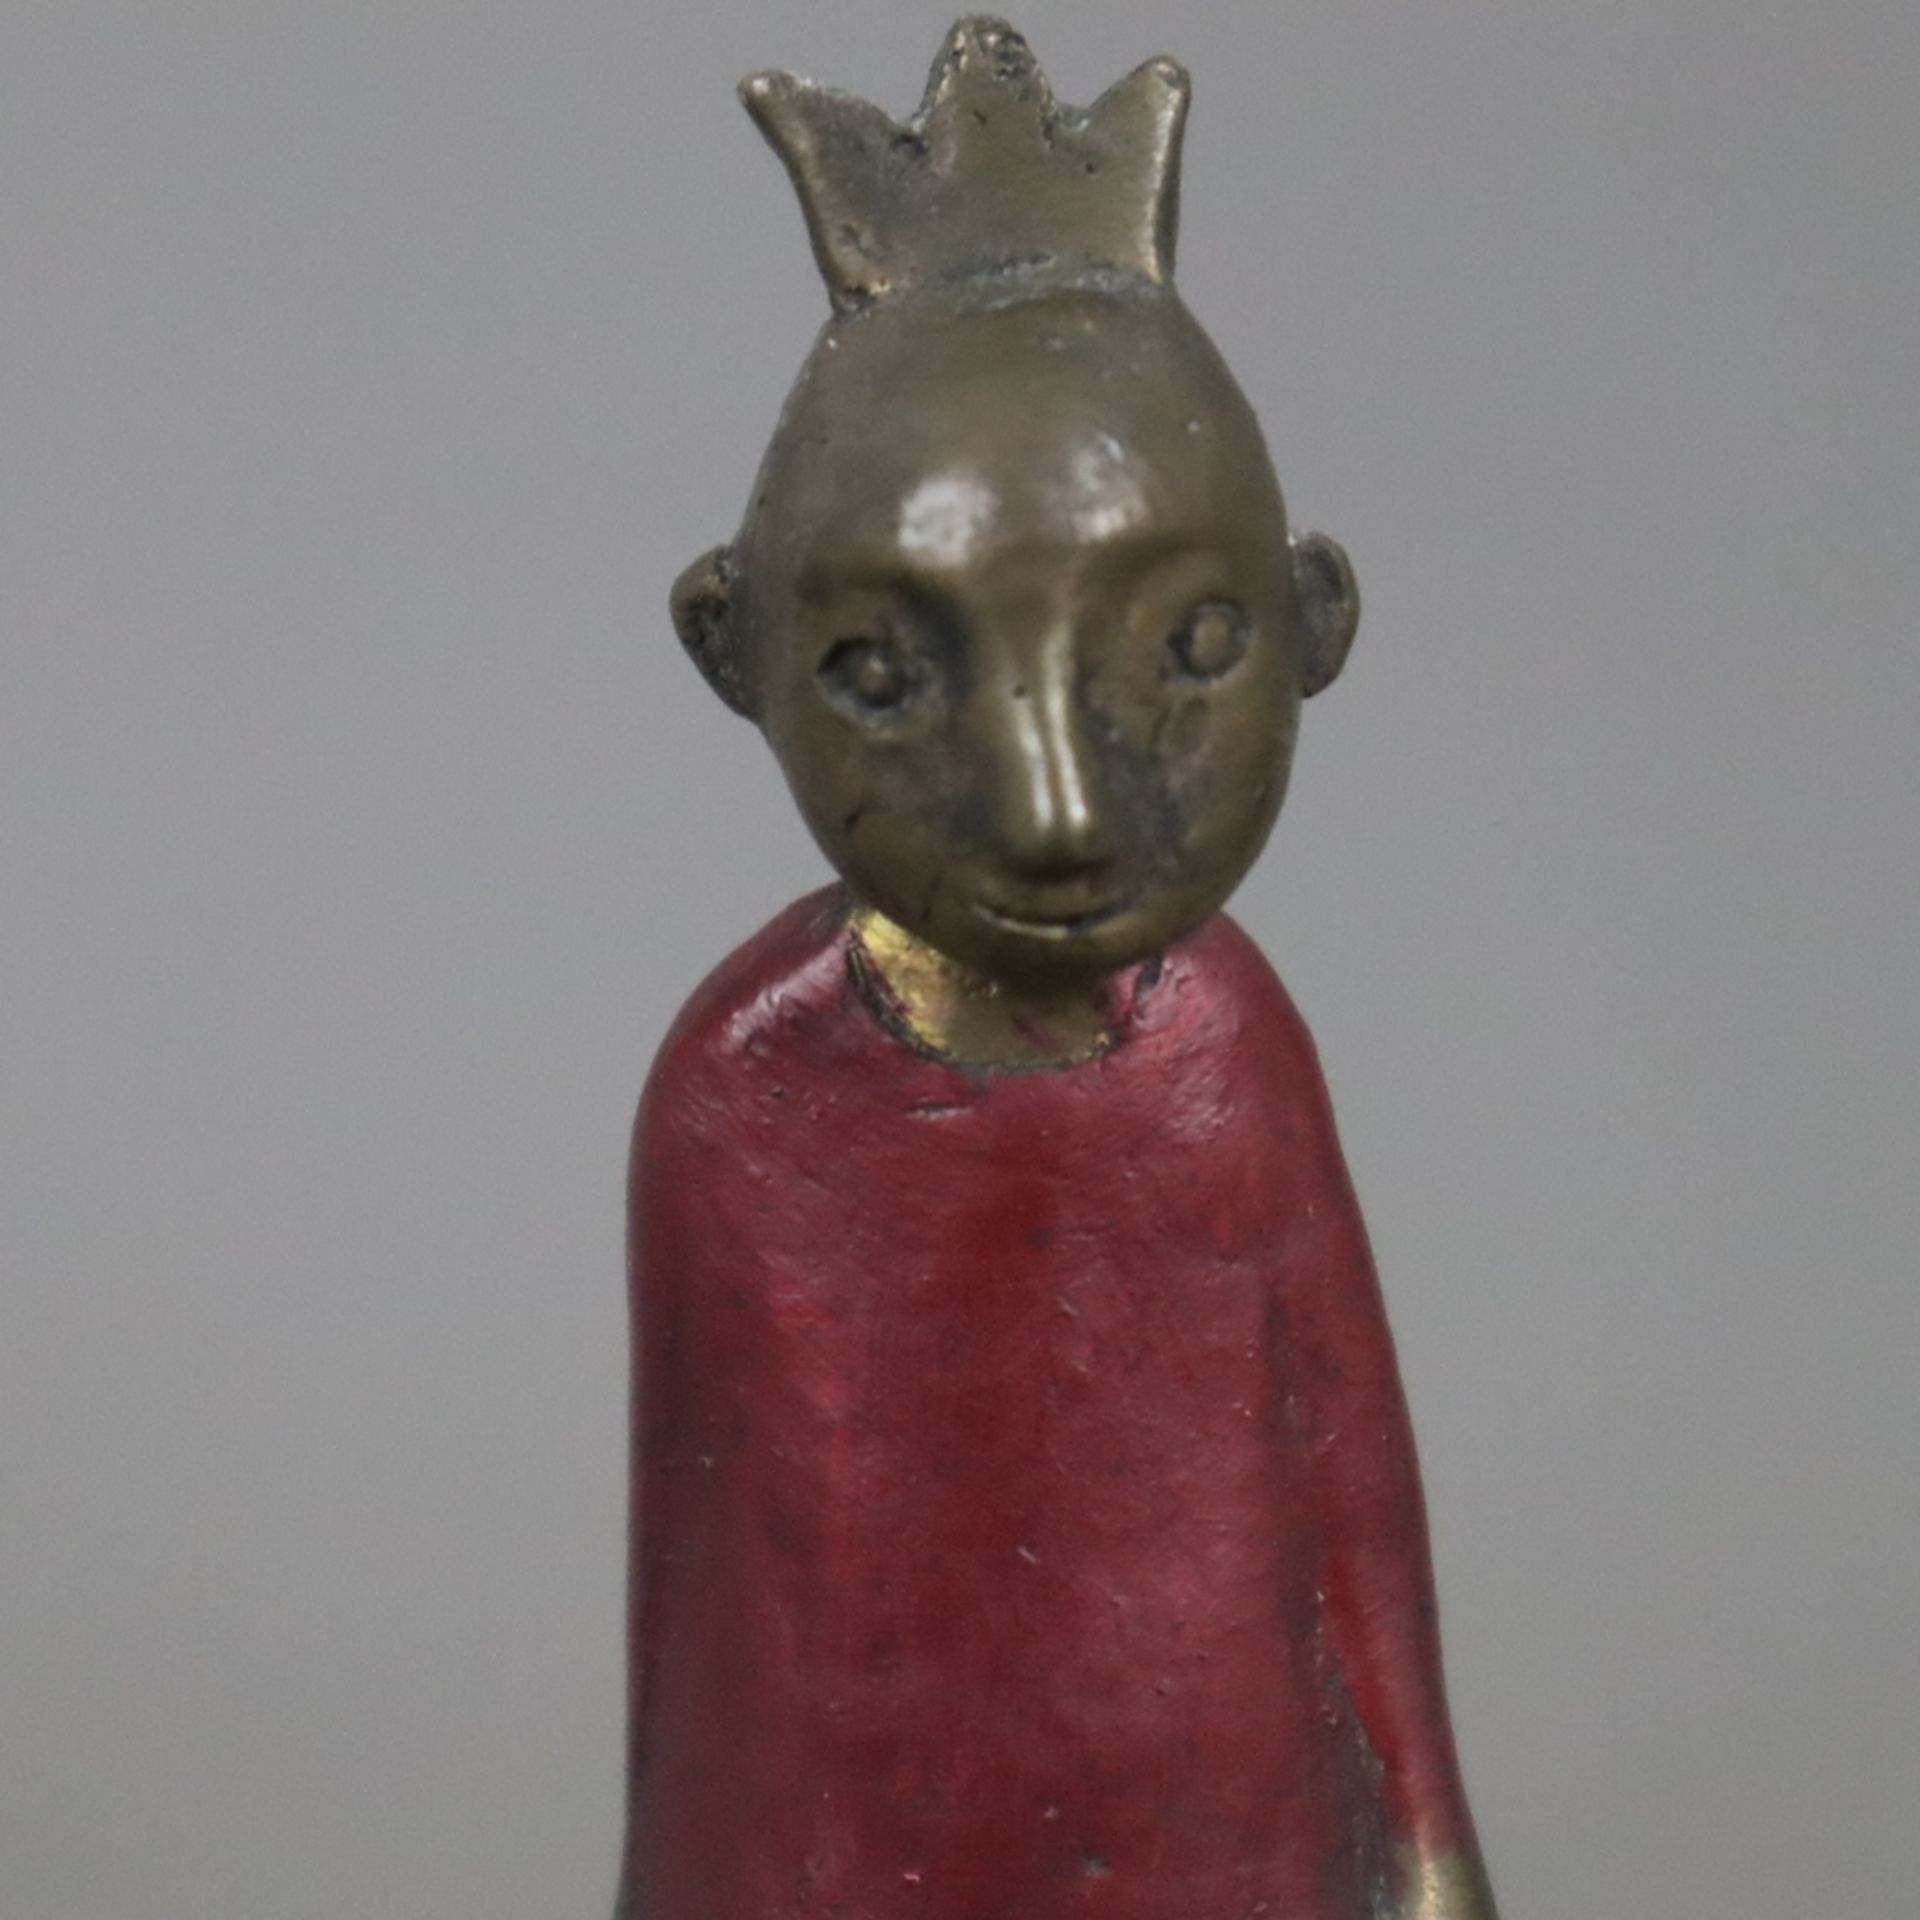 Suhr, Tamara (*1968) - Der kleine Prinz, Bronze, teils dunkel patiniert, partiell rot bemalt, monog - Image 3 of 7